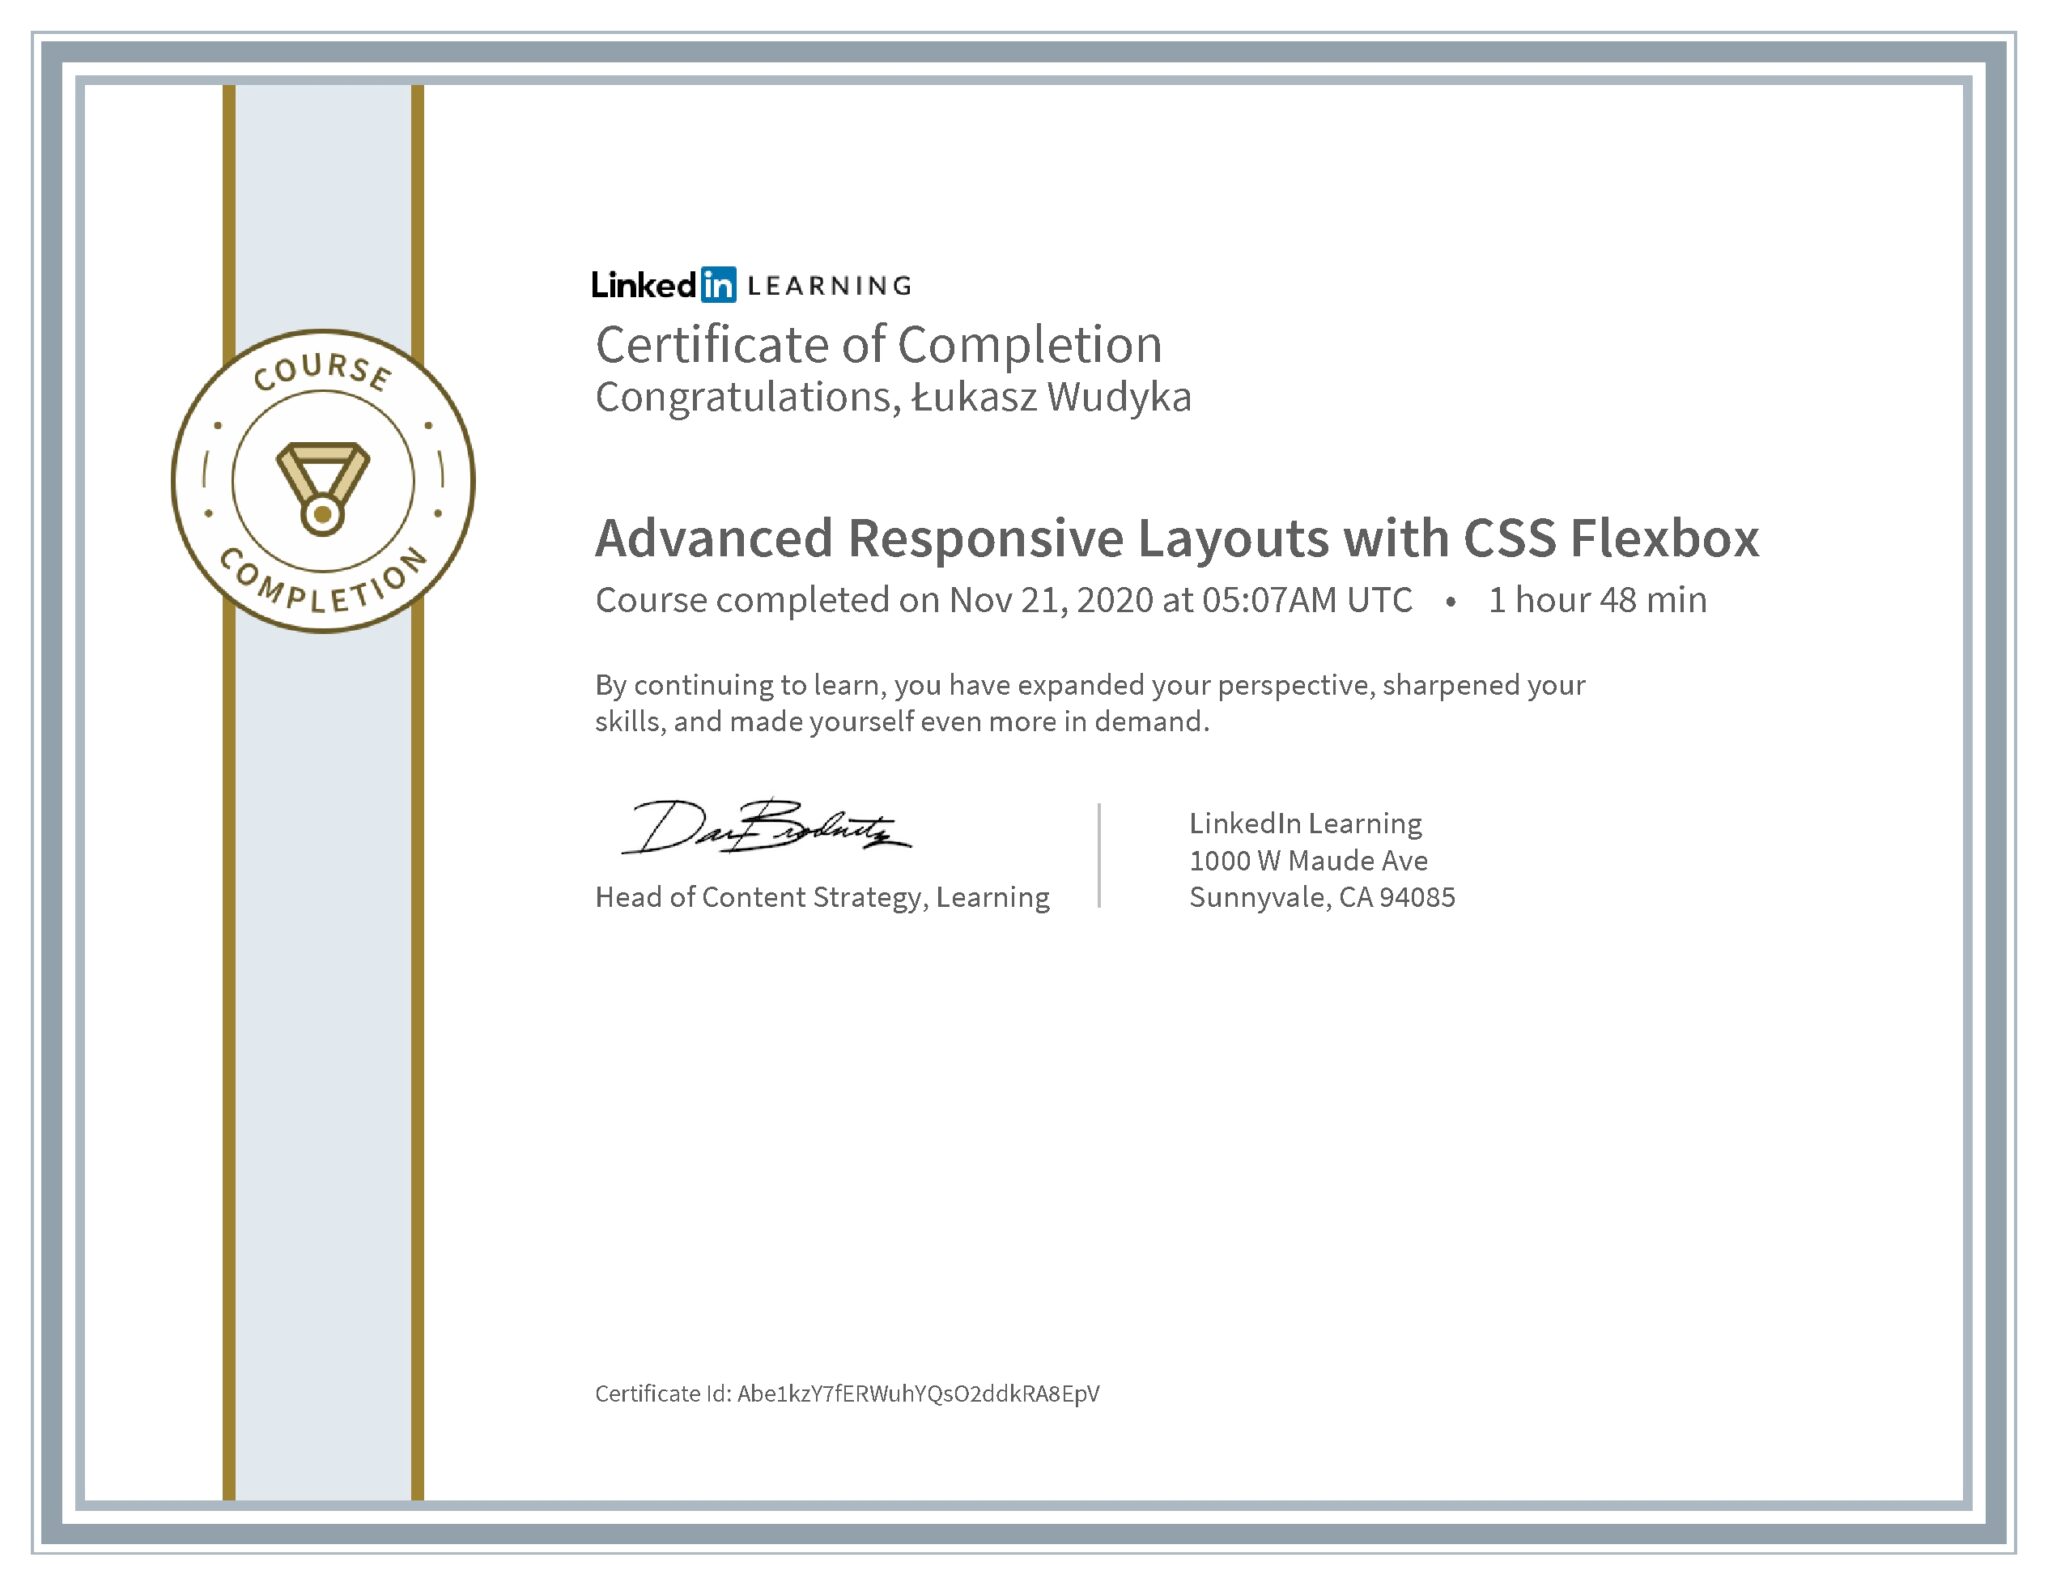 Łukasz Wudyka certyfikat LinkedIn Advanced Responsive Layouts with CSS Flexbox